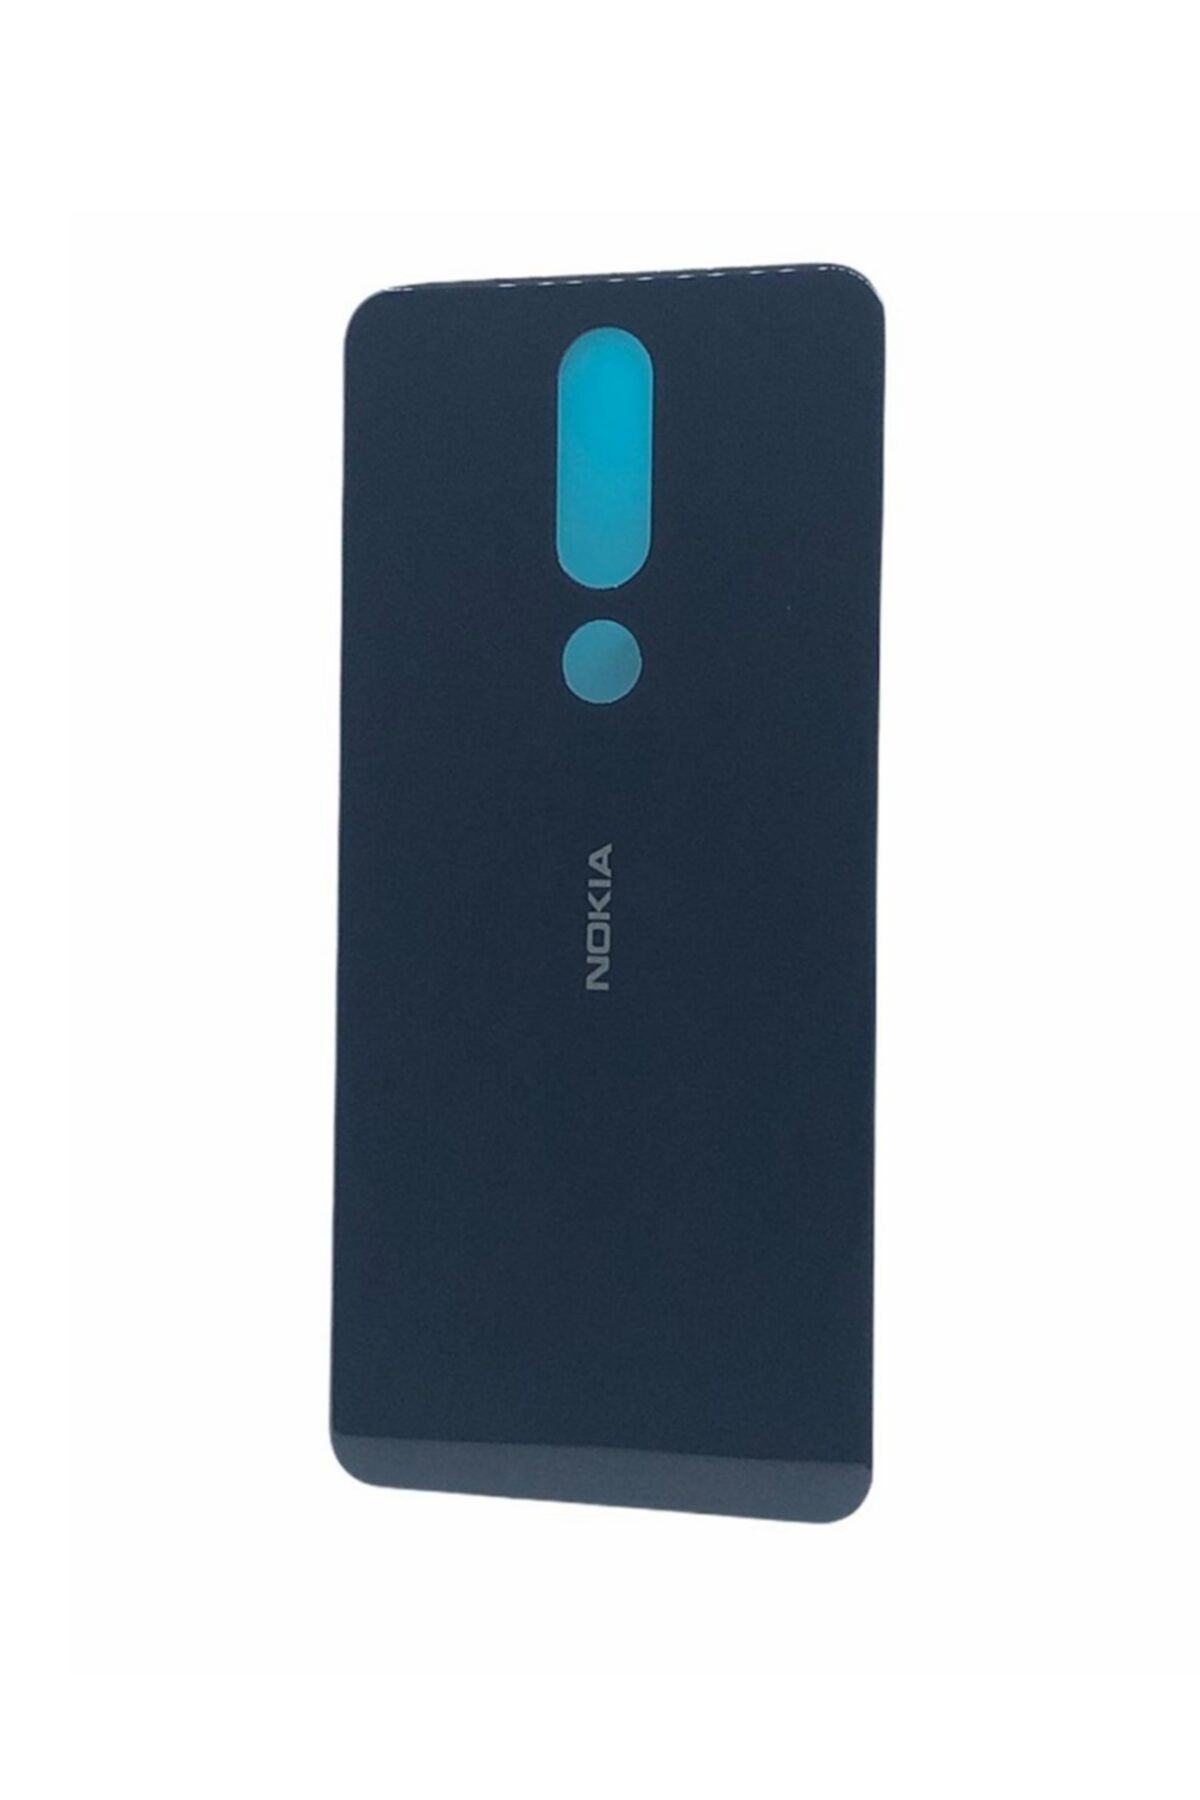 Nokia 5.1 Plus / X5 2018 Arka Pil Batarya Kapak Siyah